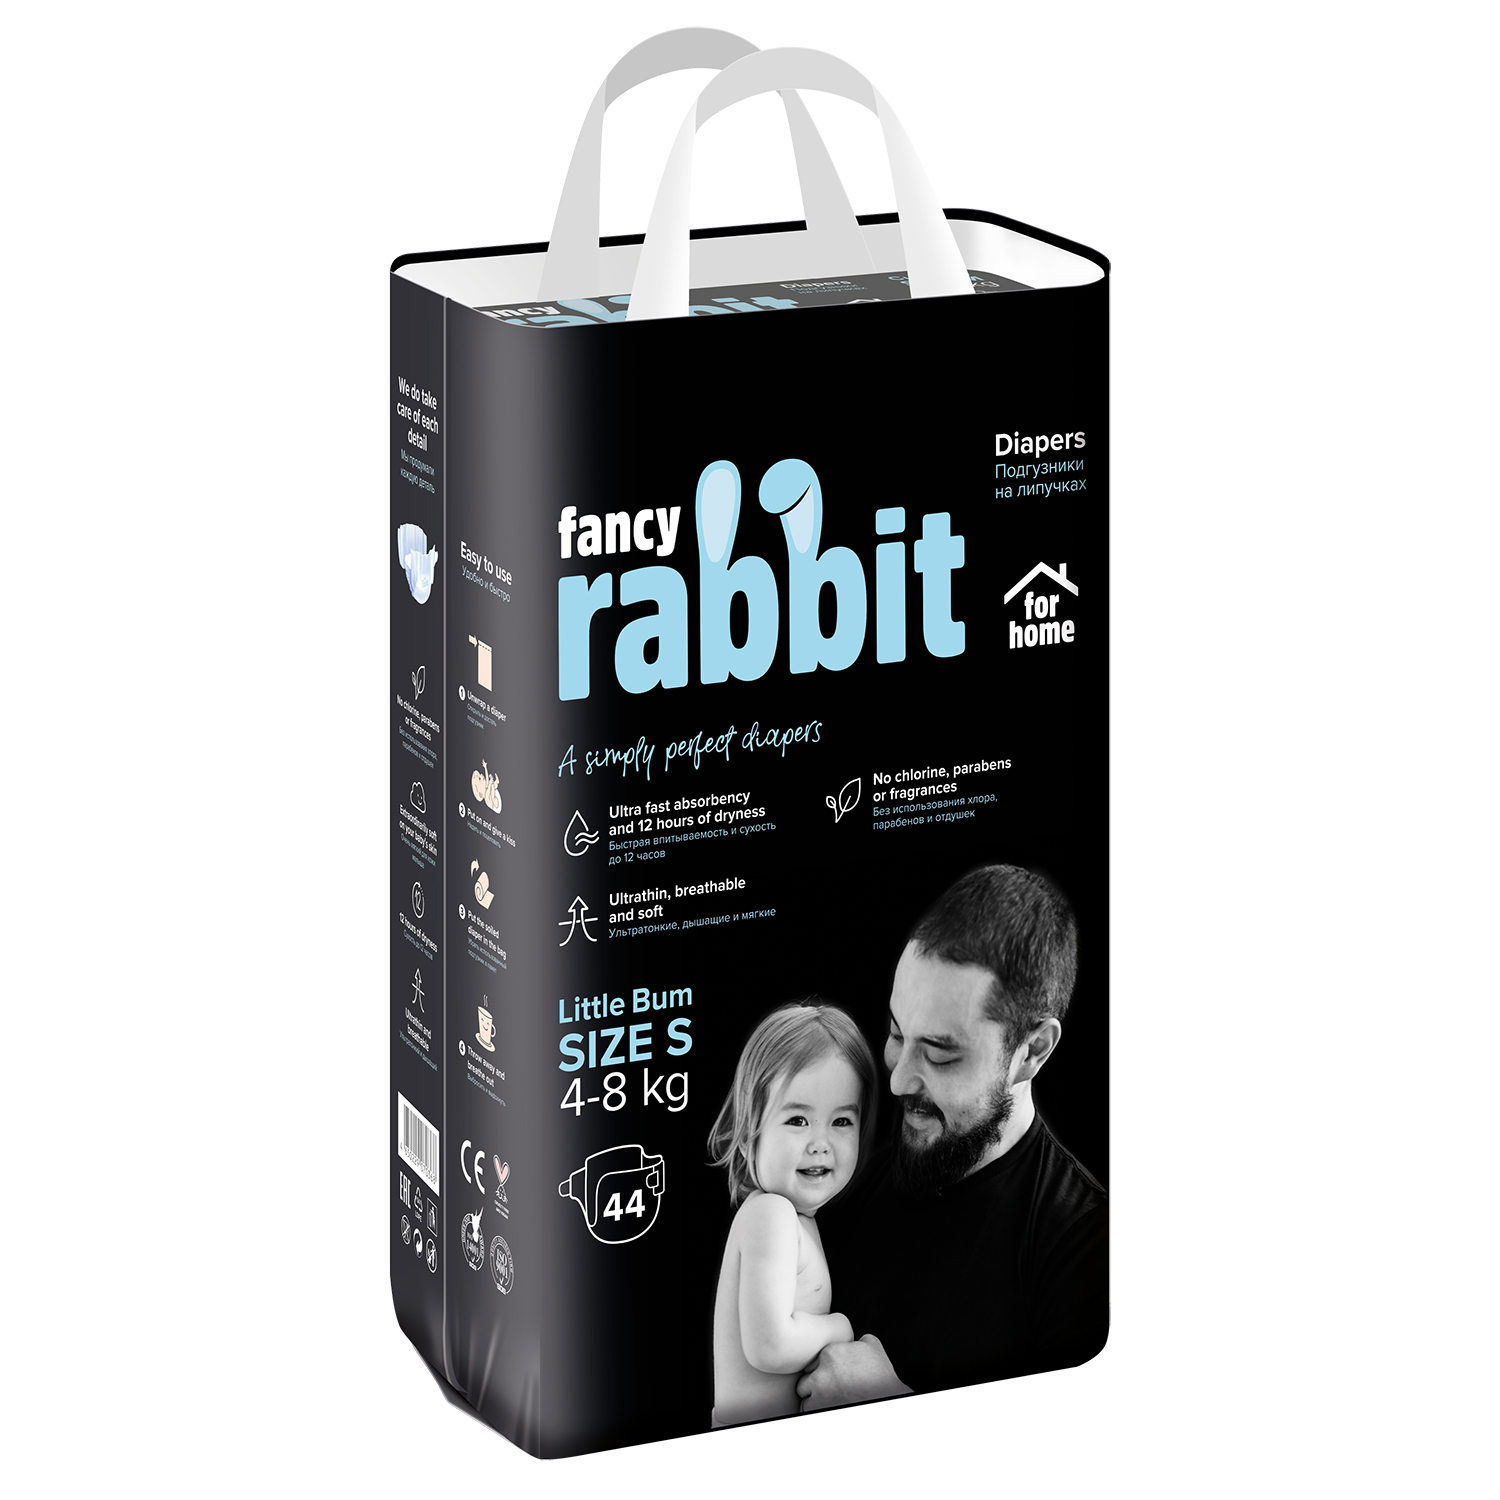 Подгузники детские Fancy Rabbit Fpr home S 4-8 кг 44 шт подгузники fancy rabbit for home xs 0 5 кг 44 шт